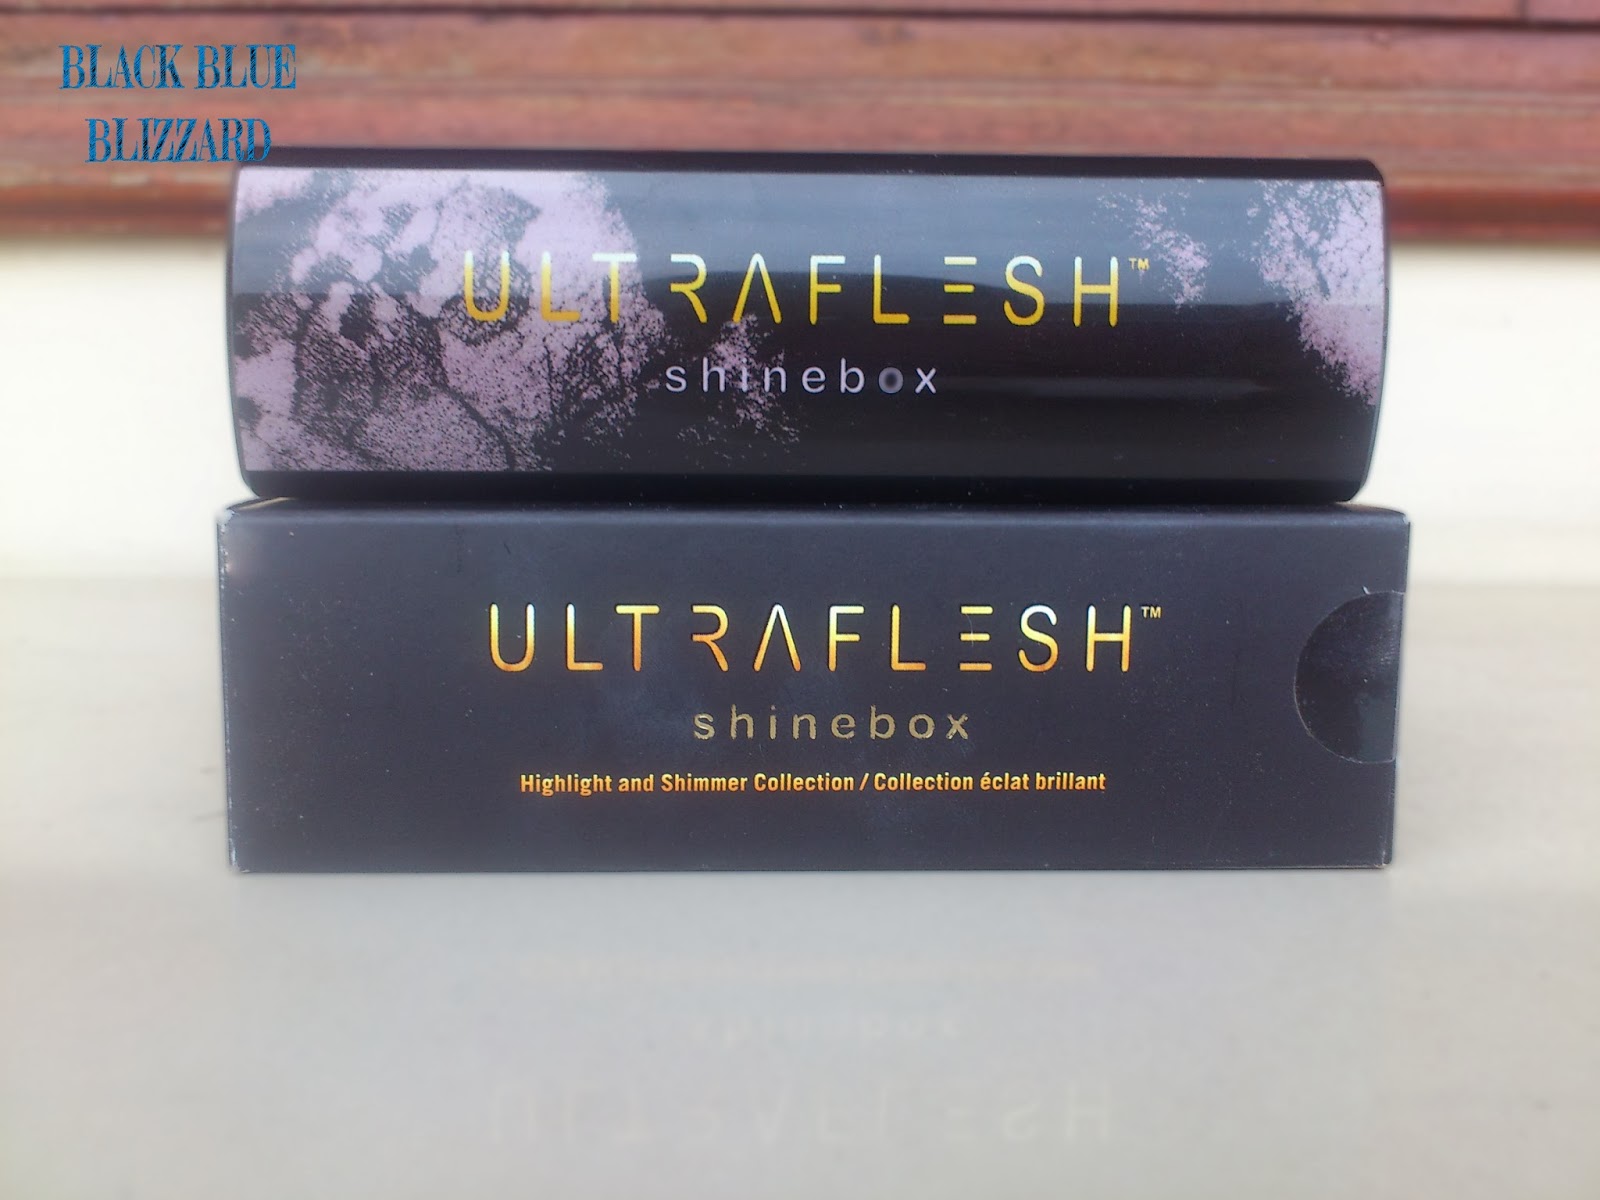 ultraflesh, ultraflesh shinebox, higlighter, shimmer, enhancer, review blogger, strawberyNET